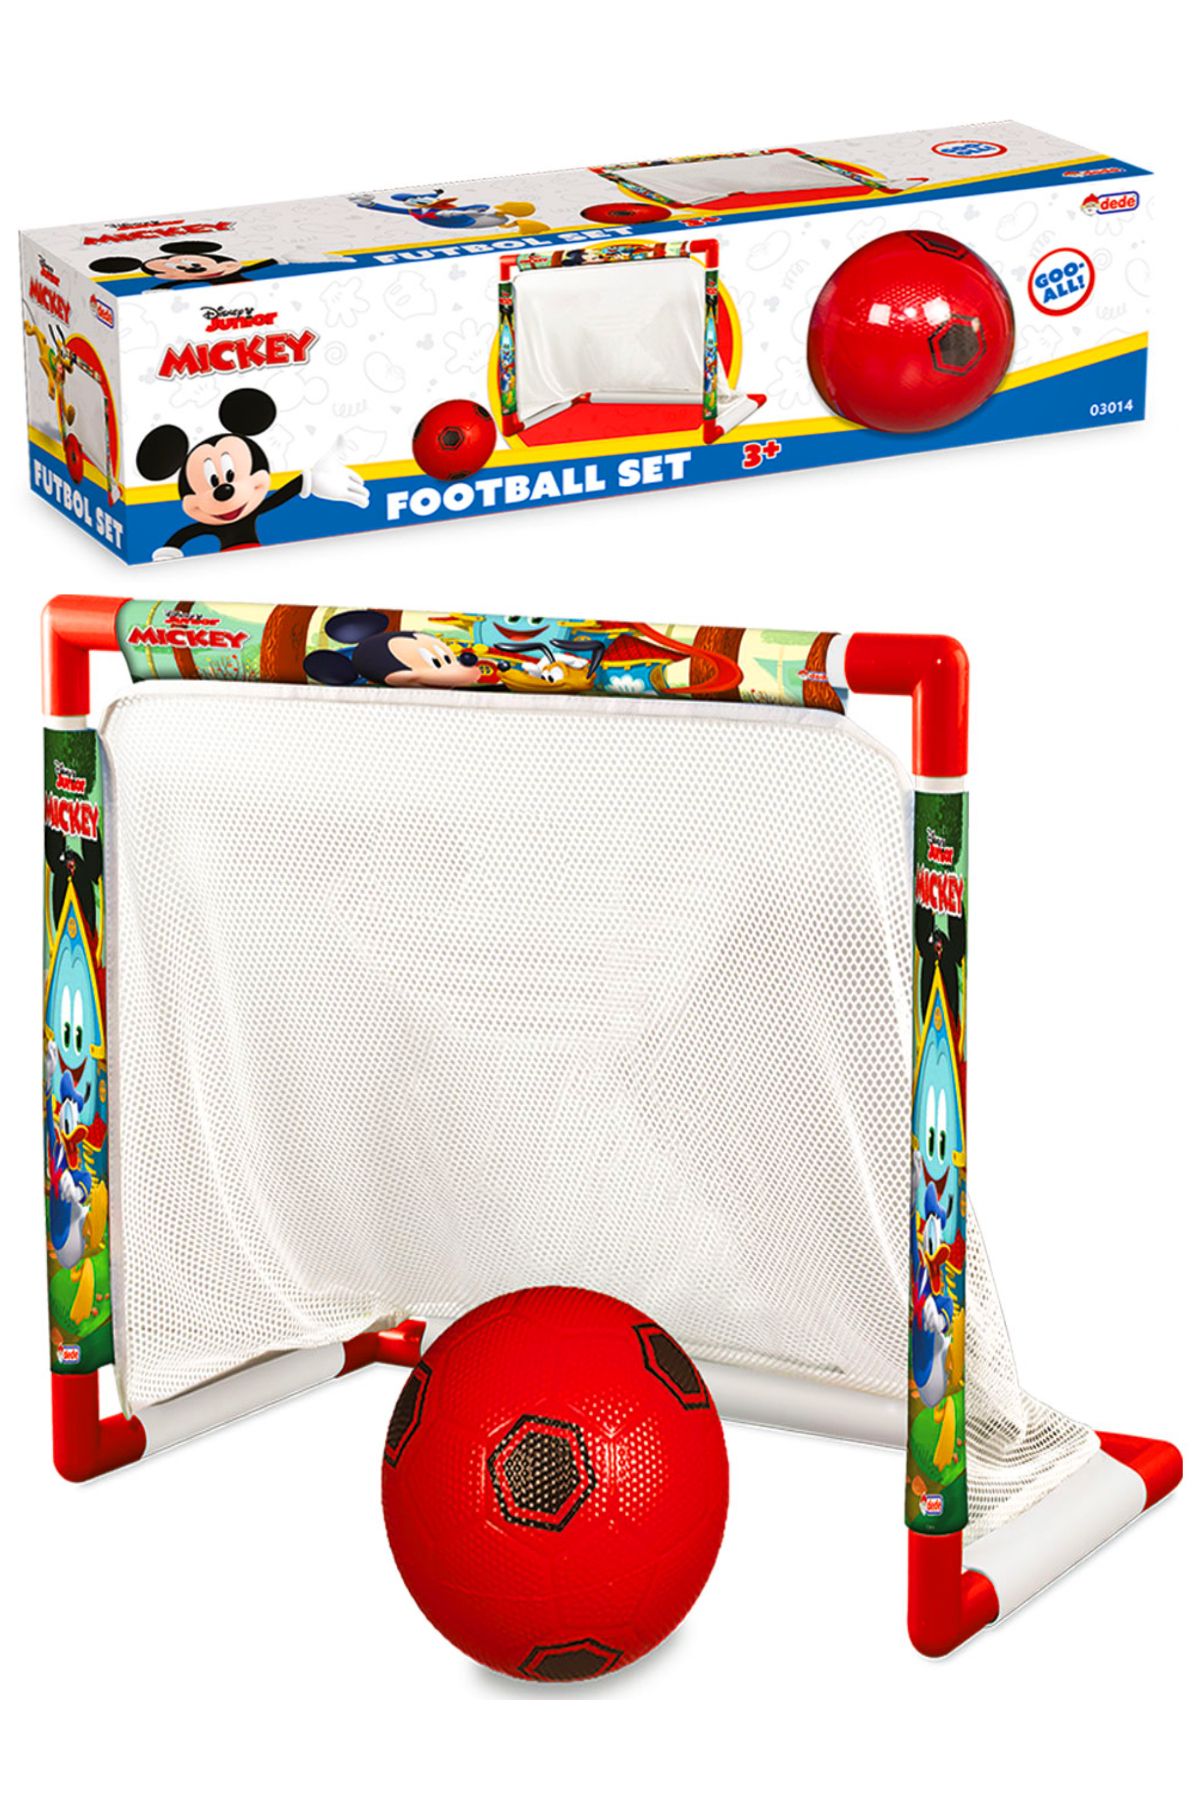 AVDA Mickey Mouse Futbol Seti - Minyatür Kale / Futbol Kalesi Ve Top